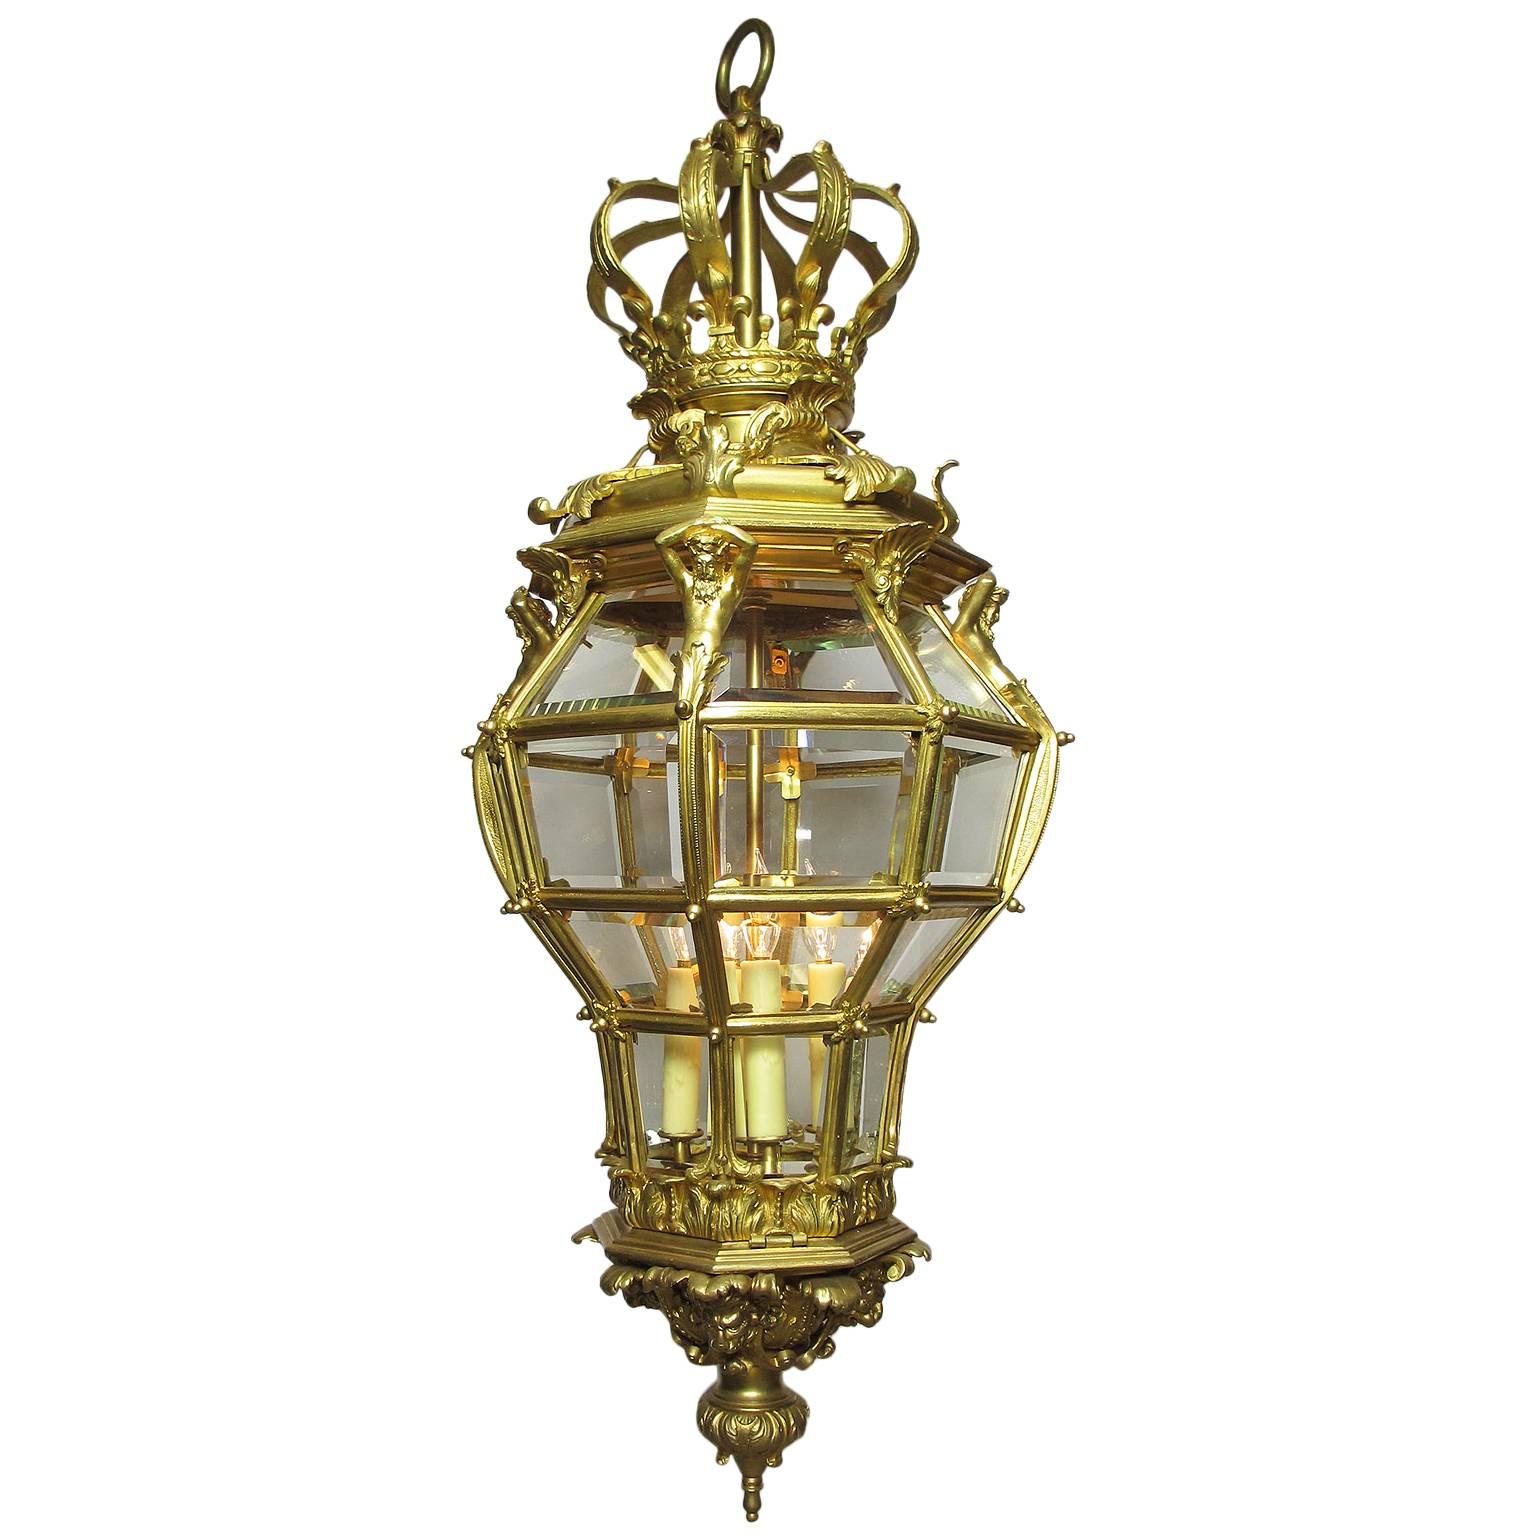 Grande et grande lanterne figurative française de style Louis XIV du XIXe siècle en bronze doré